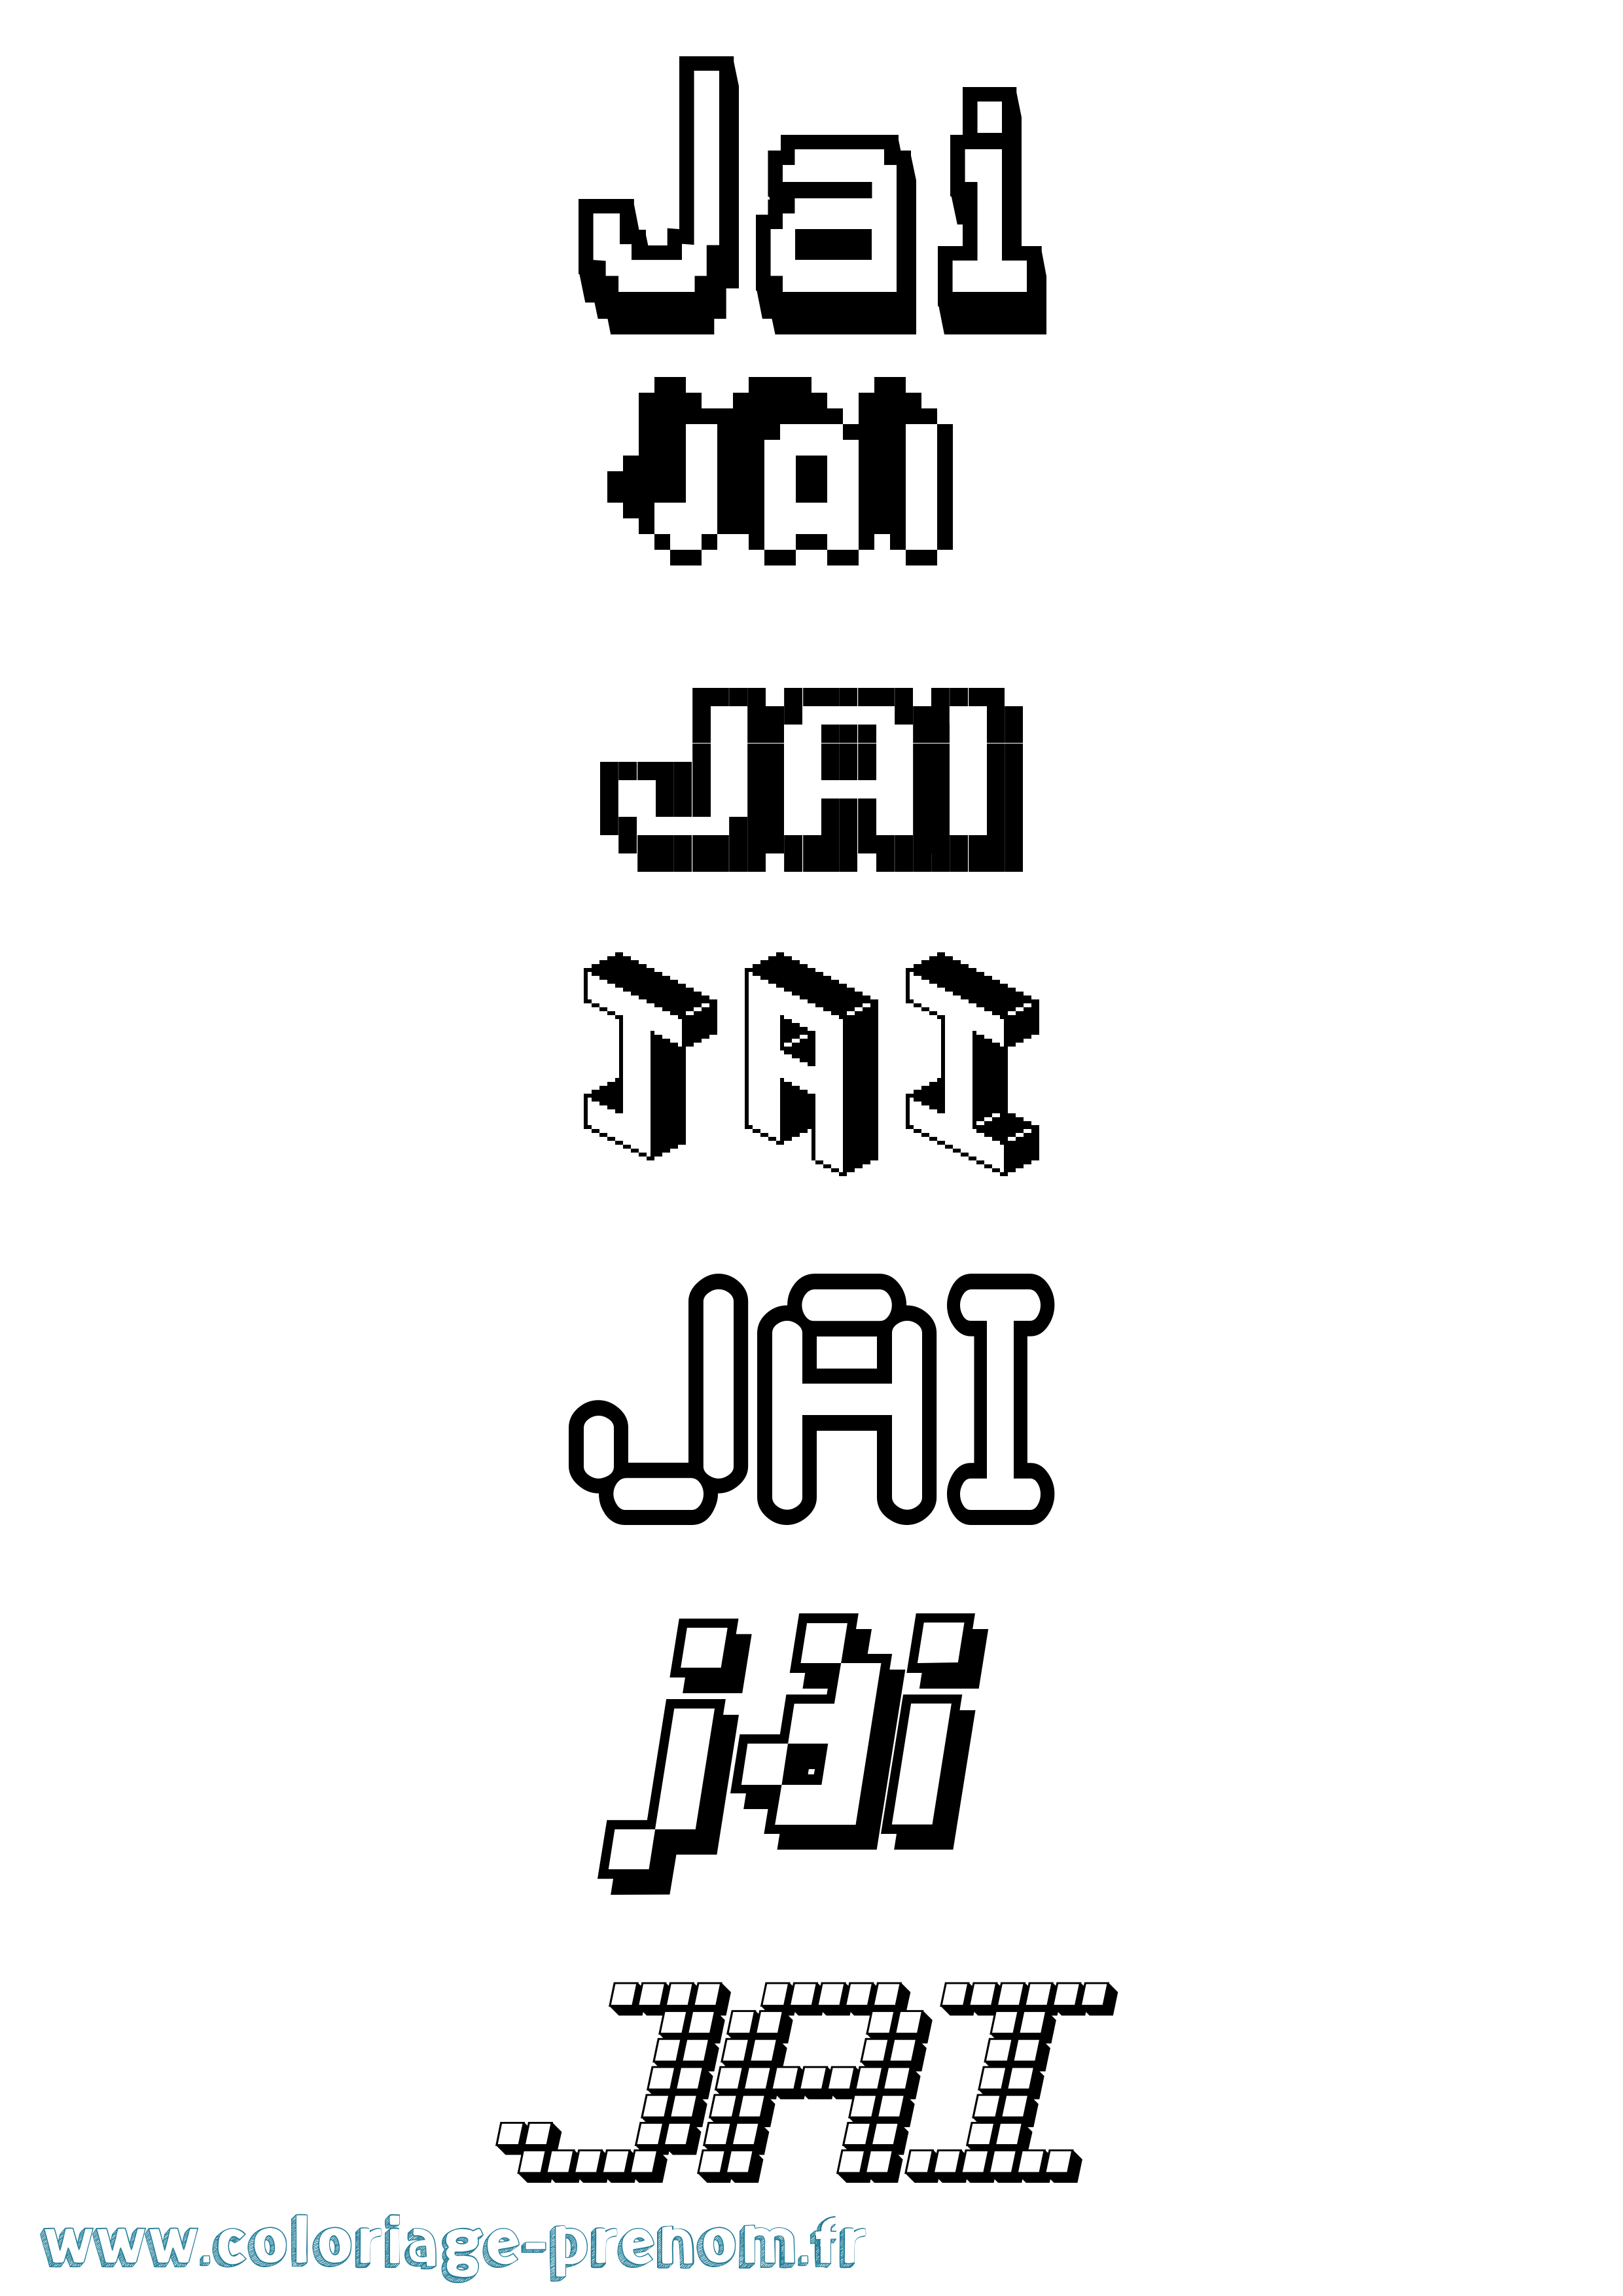 Coloriage prénom Jai Pixel